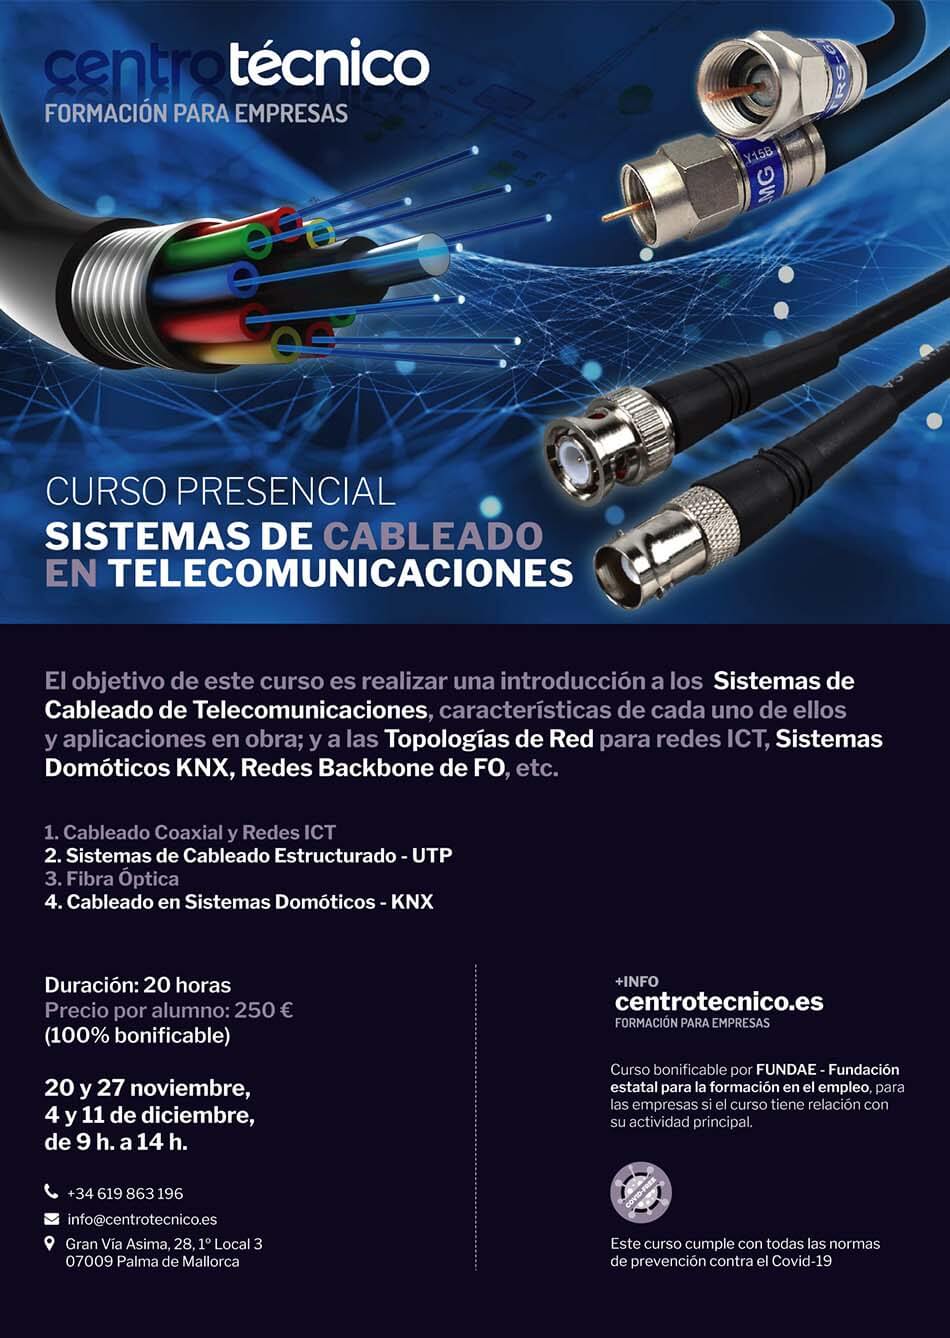 Curso de sistemas de cableado en telecomunicaciones.